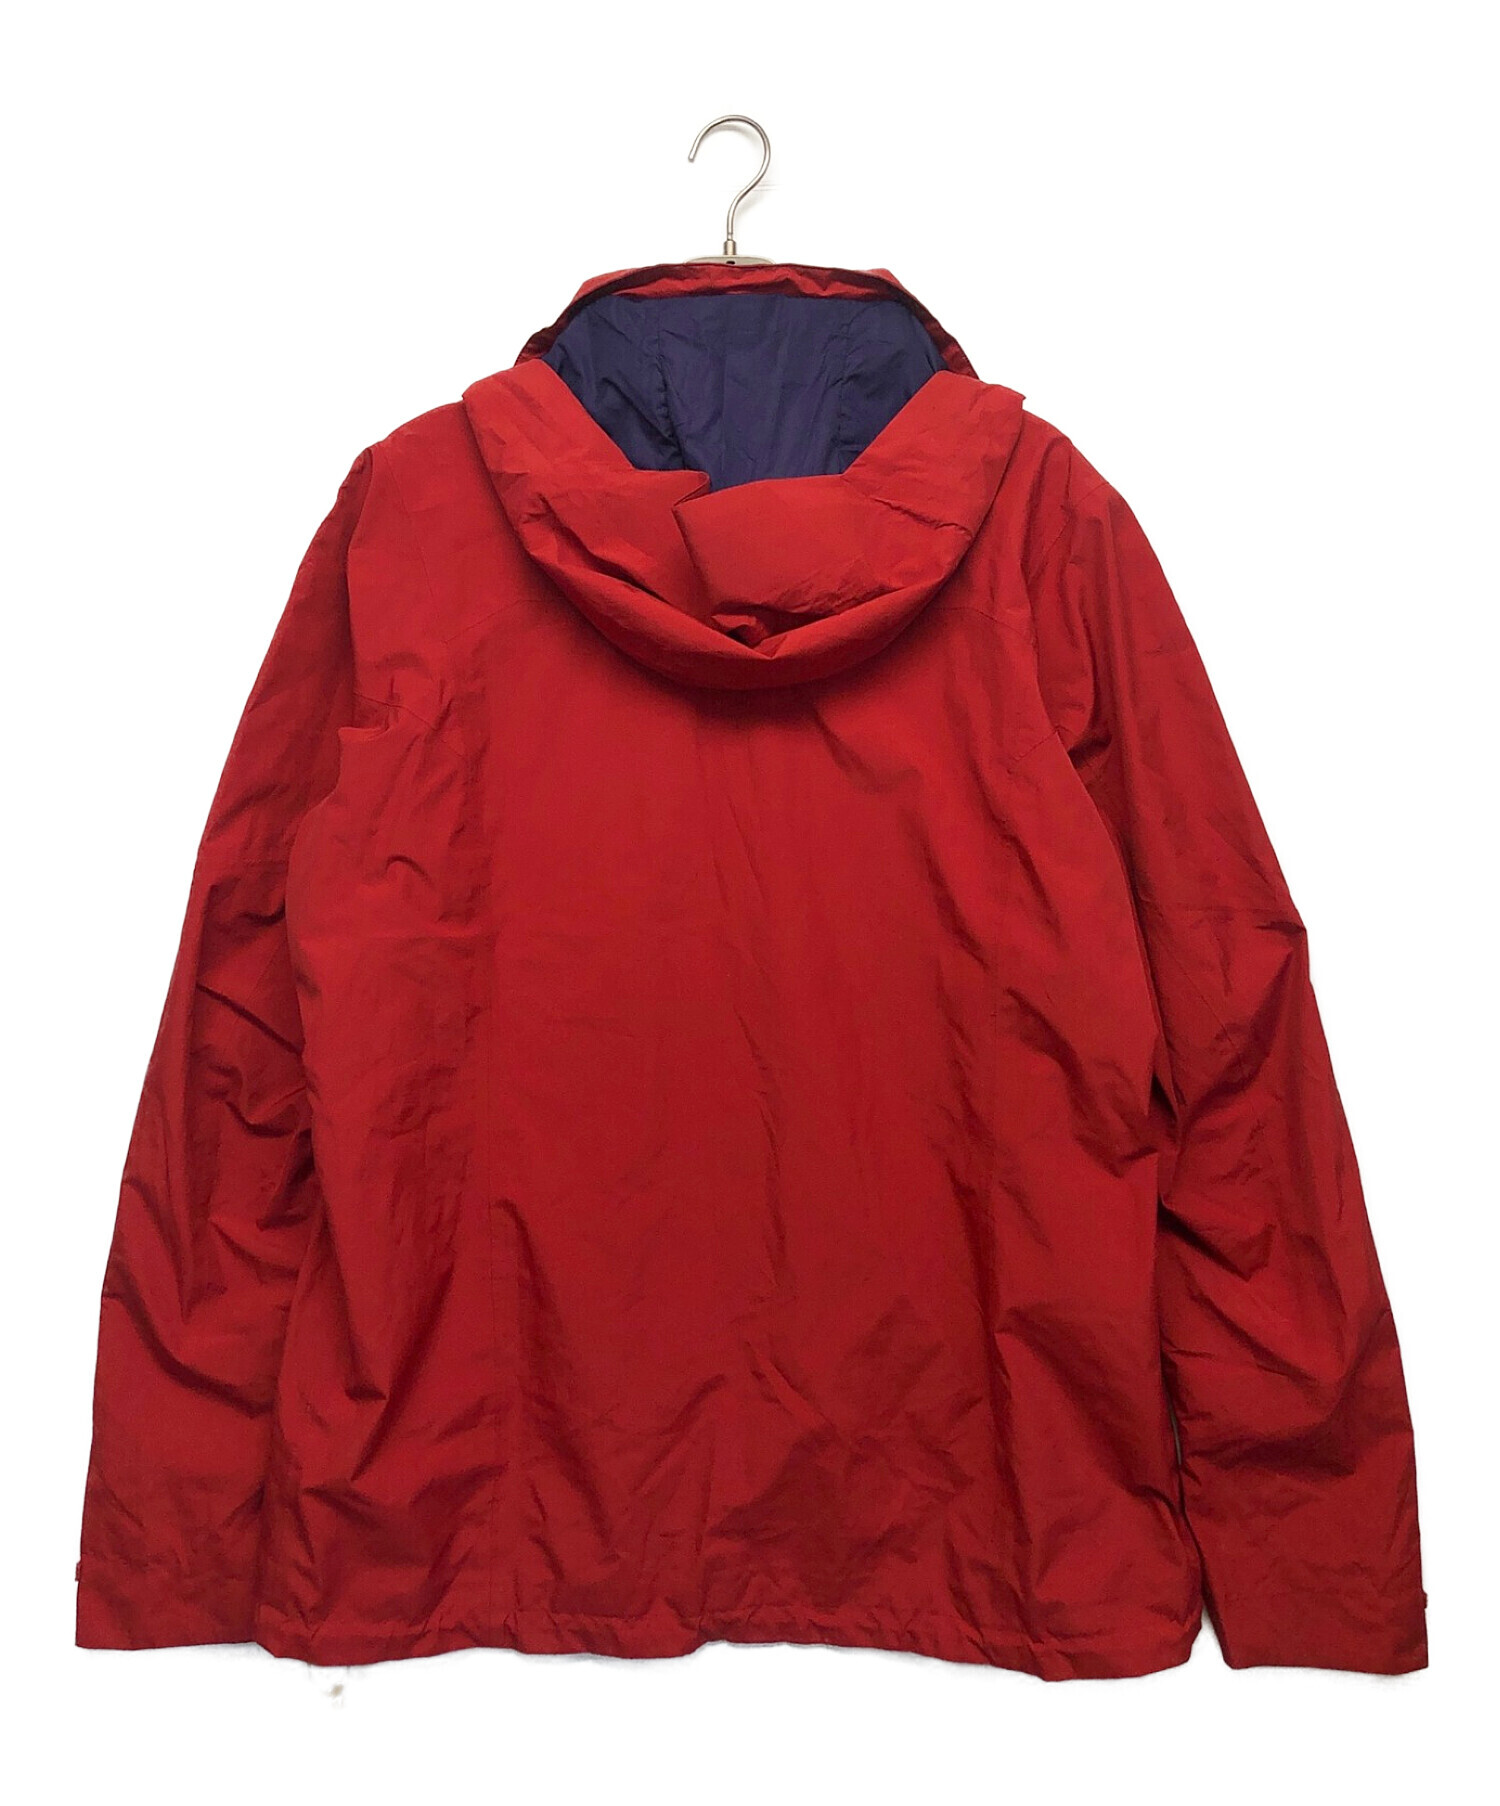 Patagonia (パタゴニア) ピオレットジャケット レッド サイズ:XL